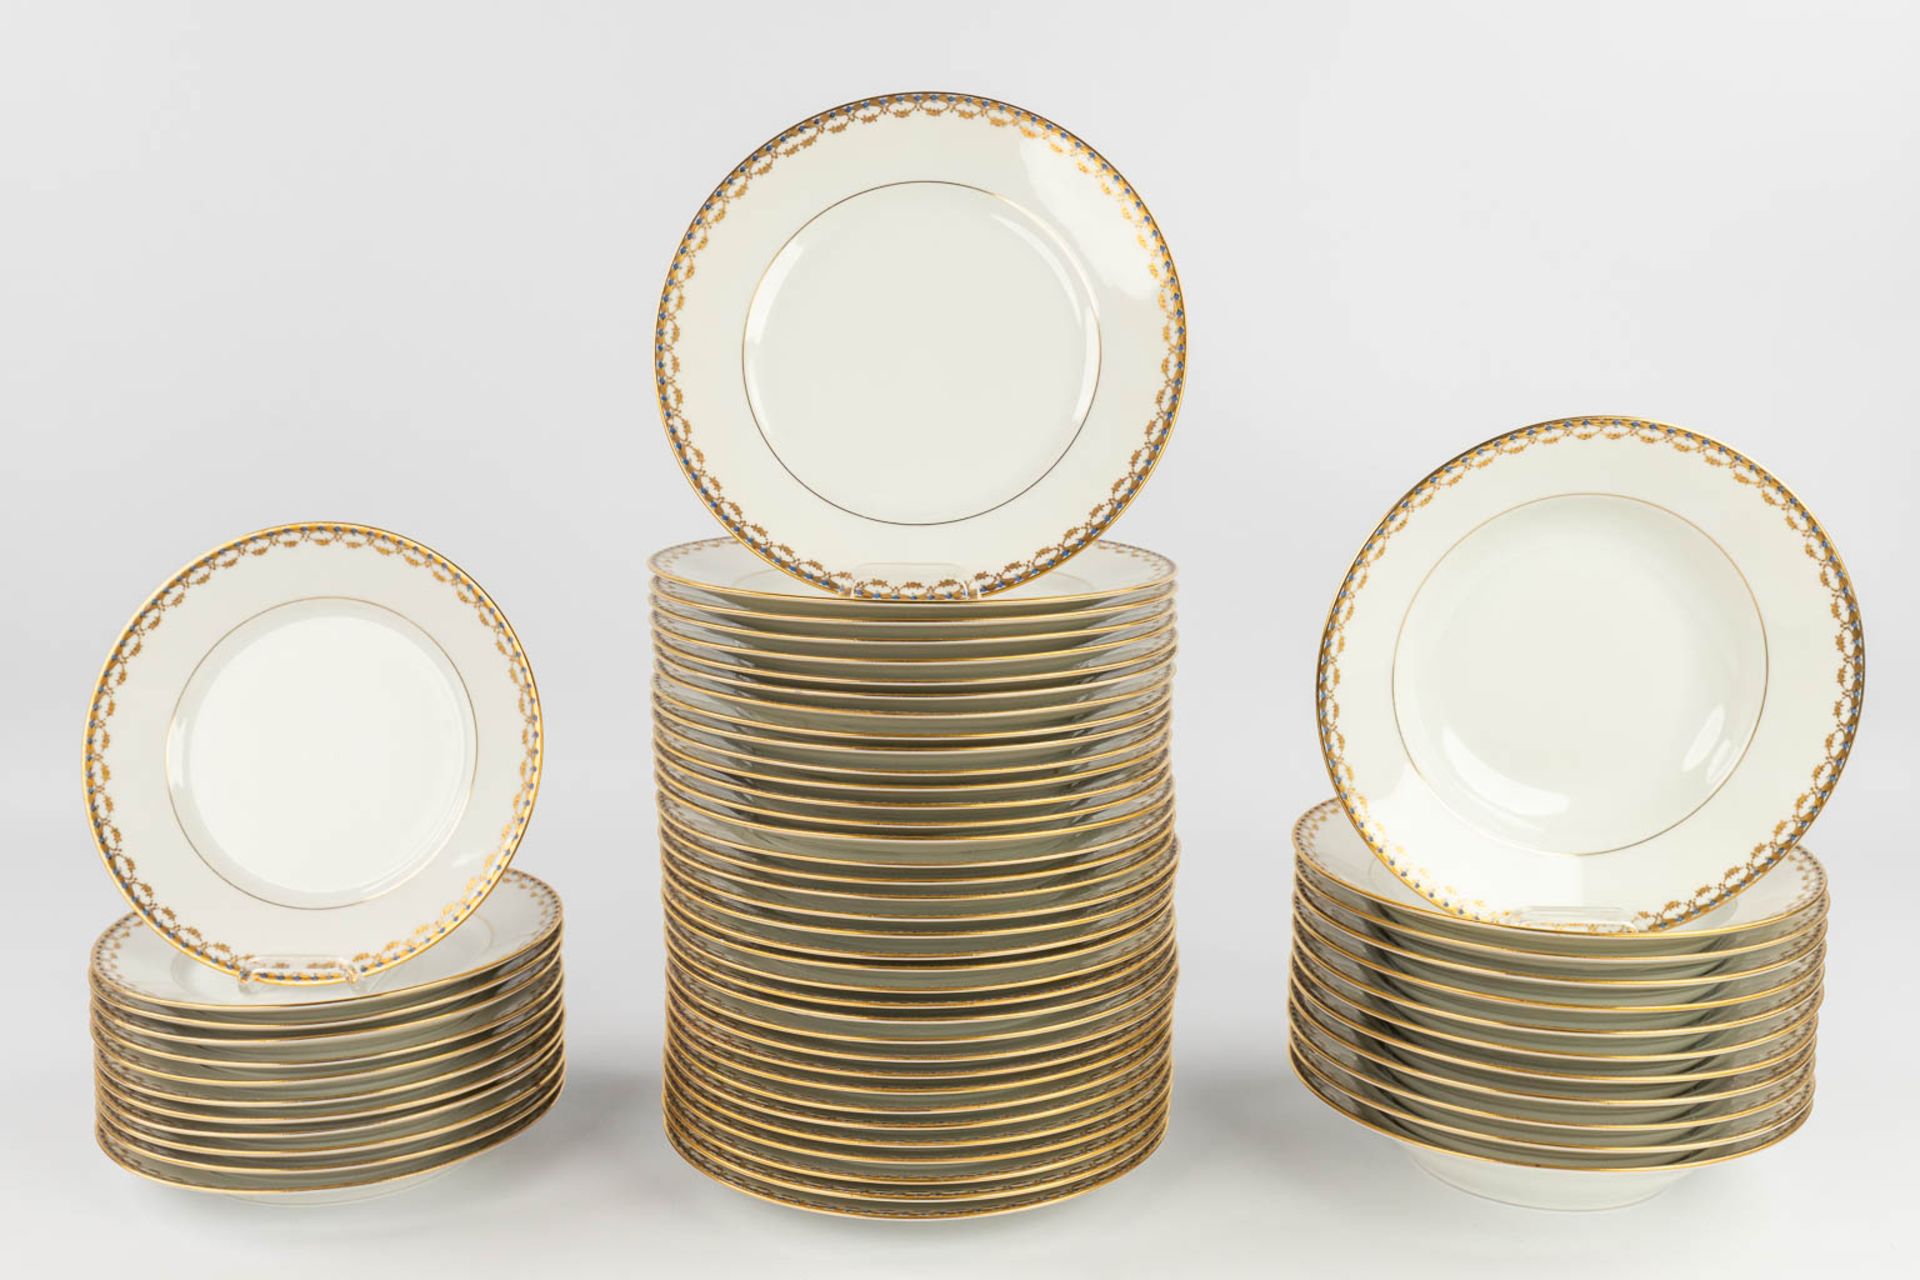 Porcelaine De Limoges, a 77 piece large dinner service. (L: 29 x W: 44 cm) - Image 3 of 20